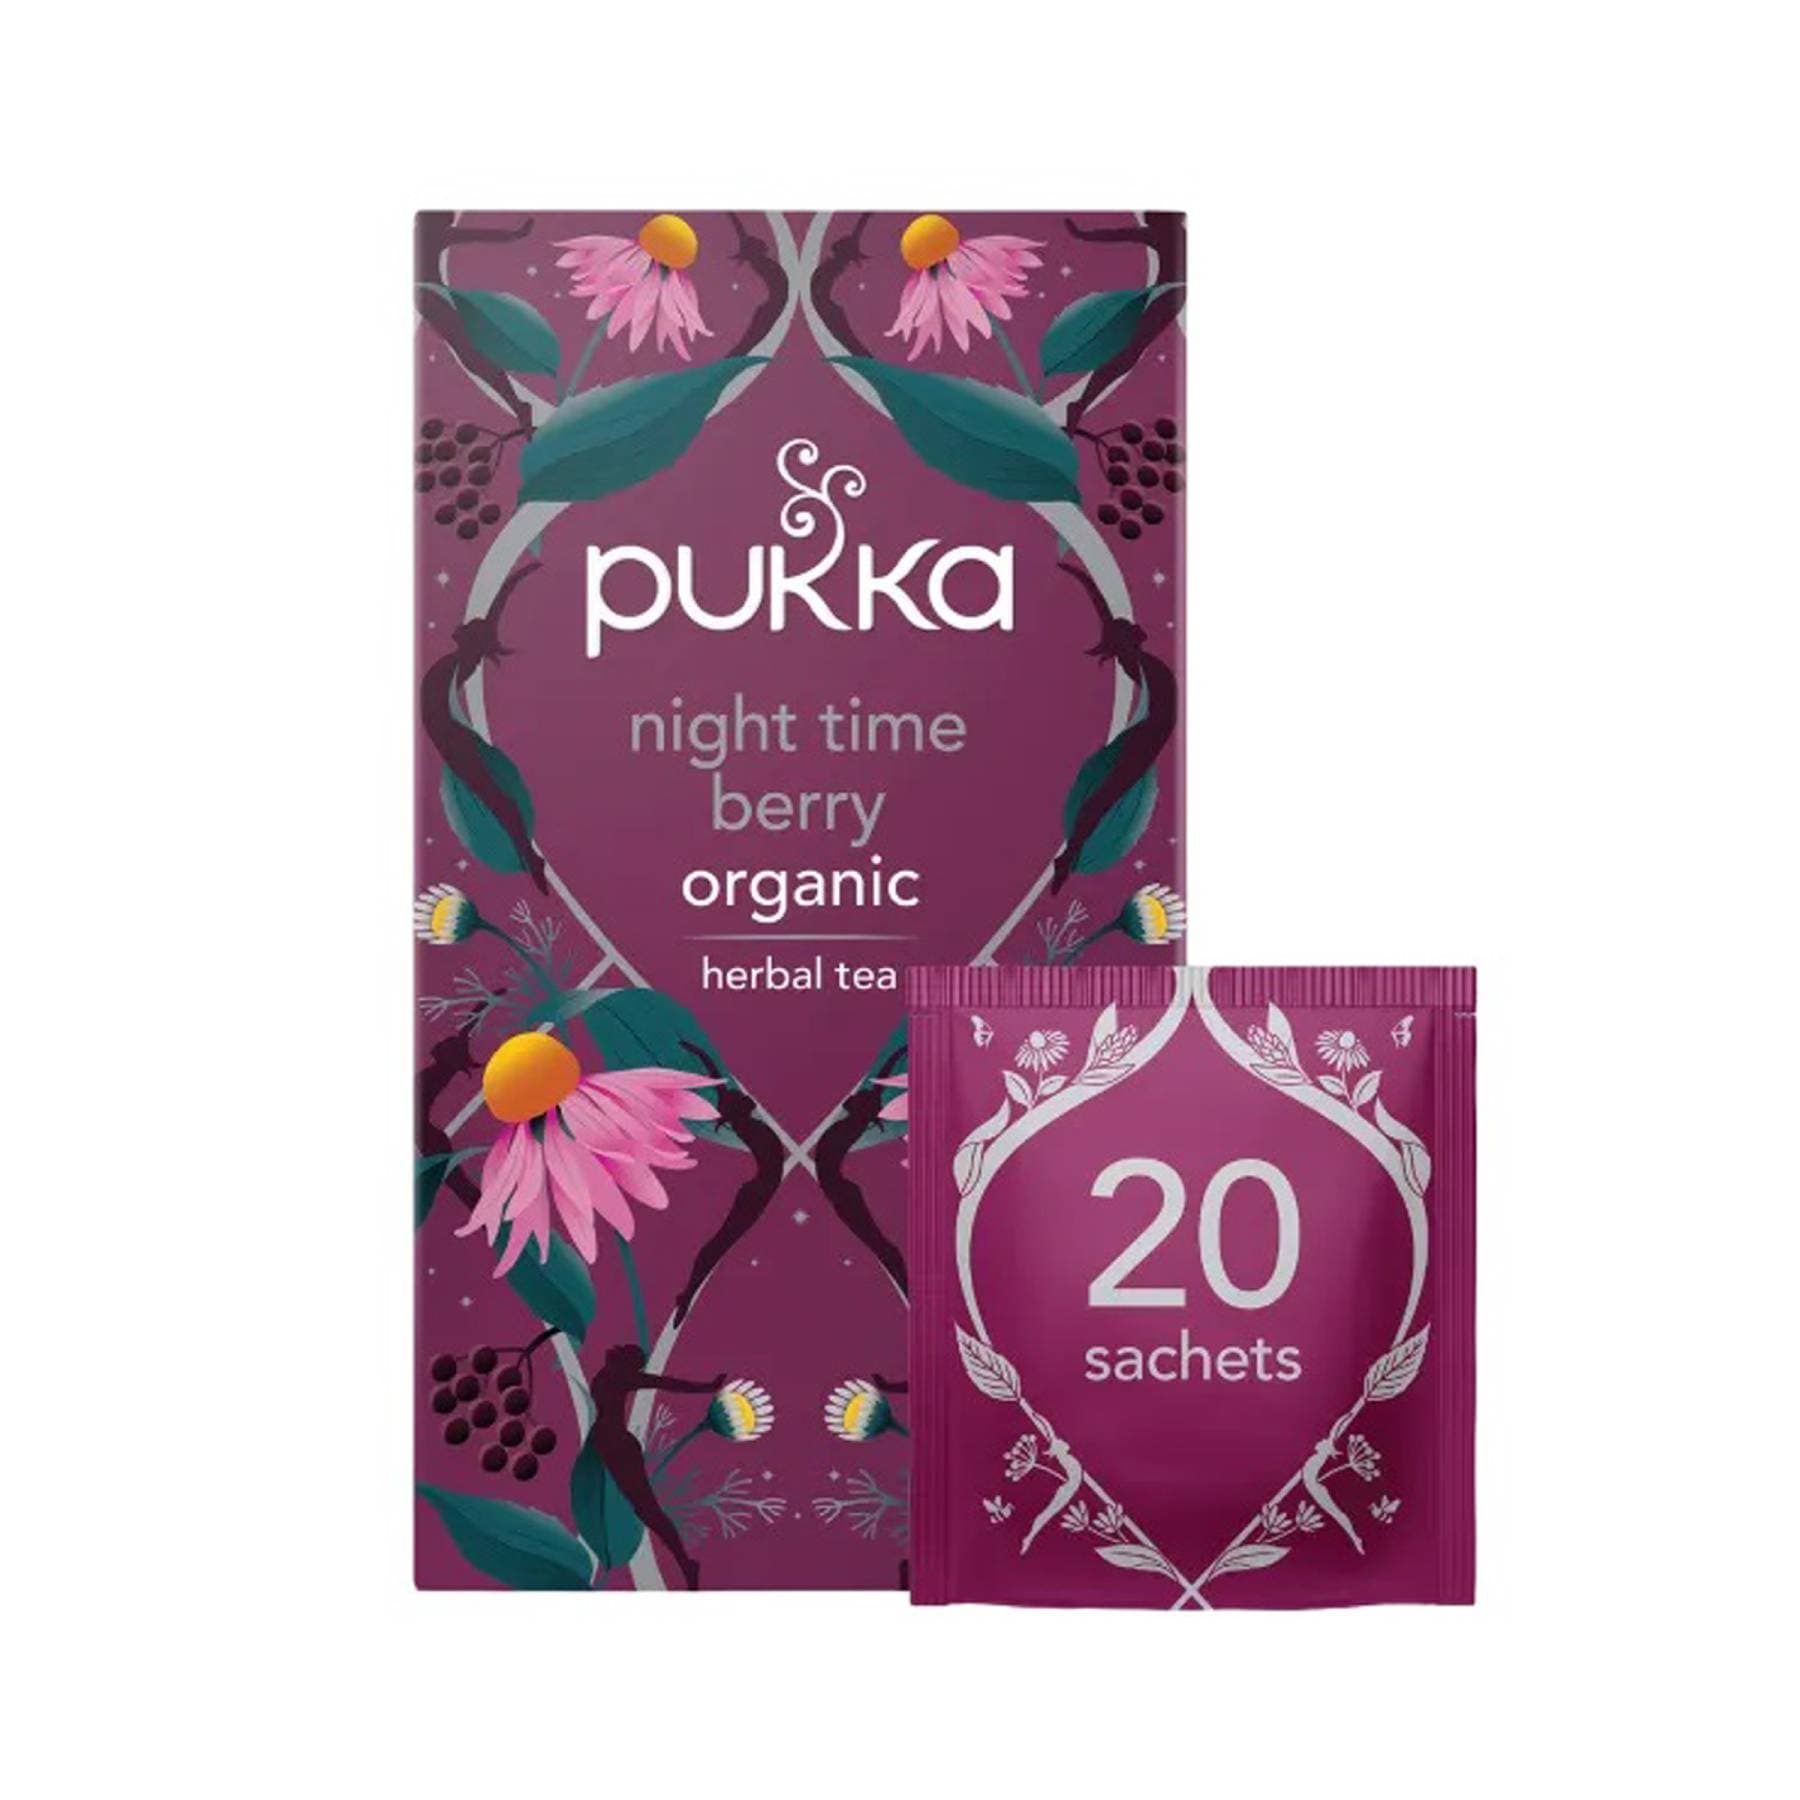 Pukka night time berry 20 tea bags